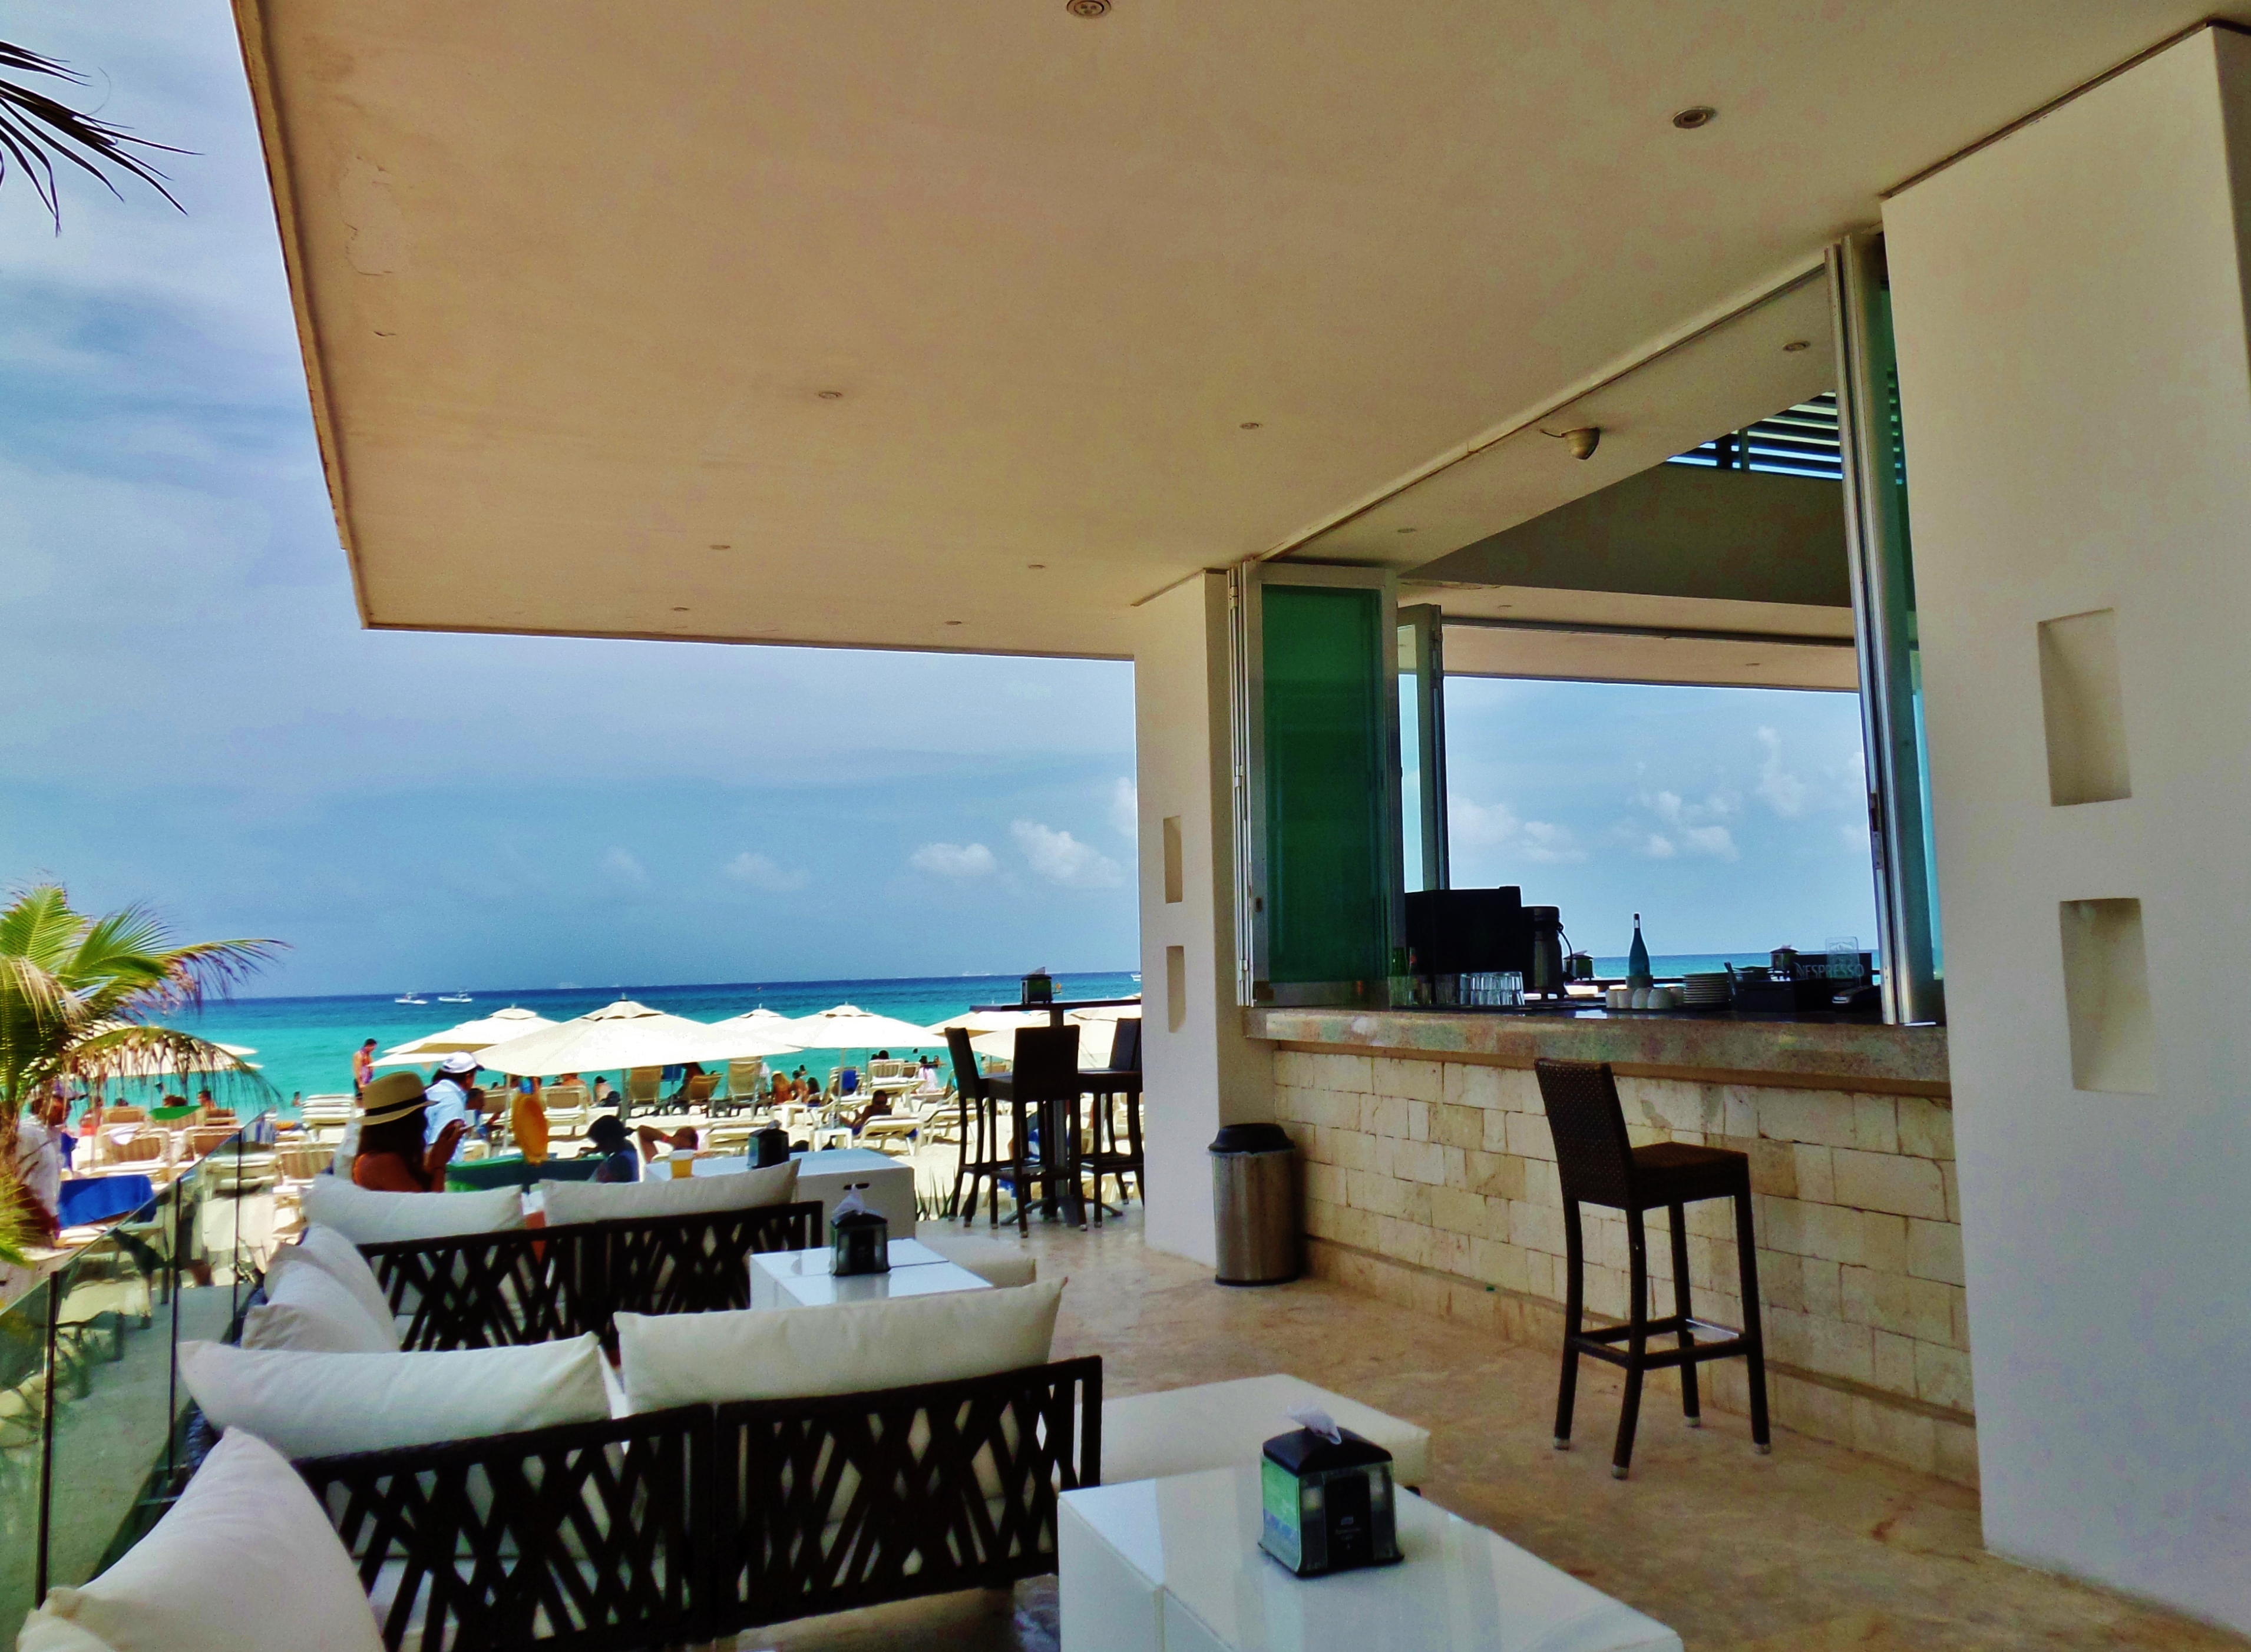 The popular Mamitas Beach Club in Playa Del Carmen